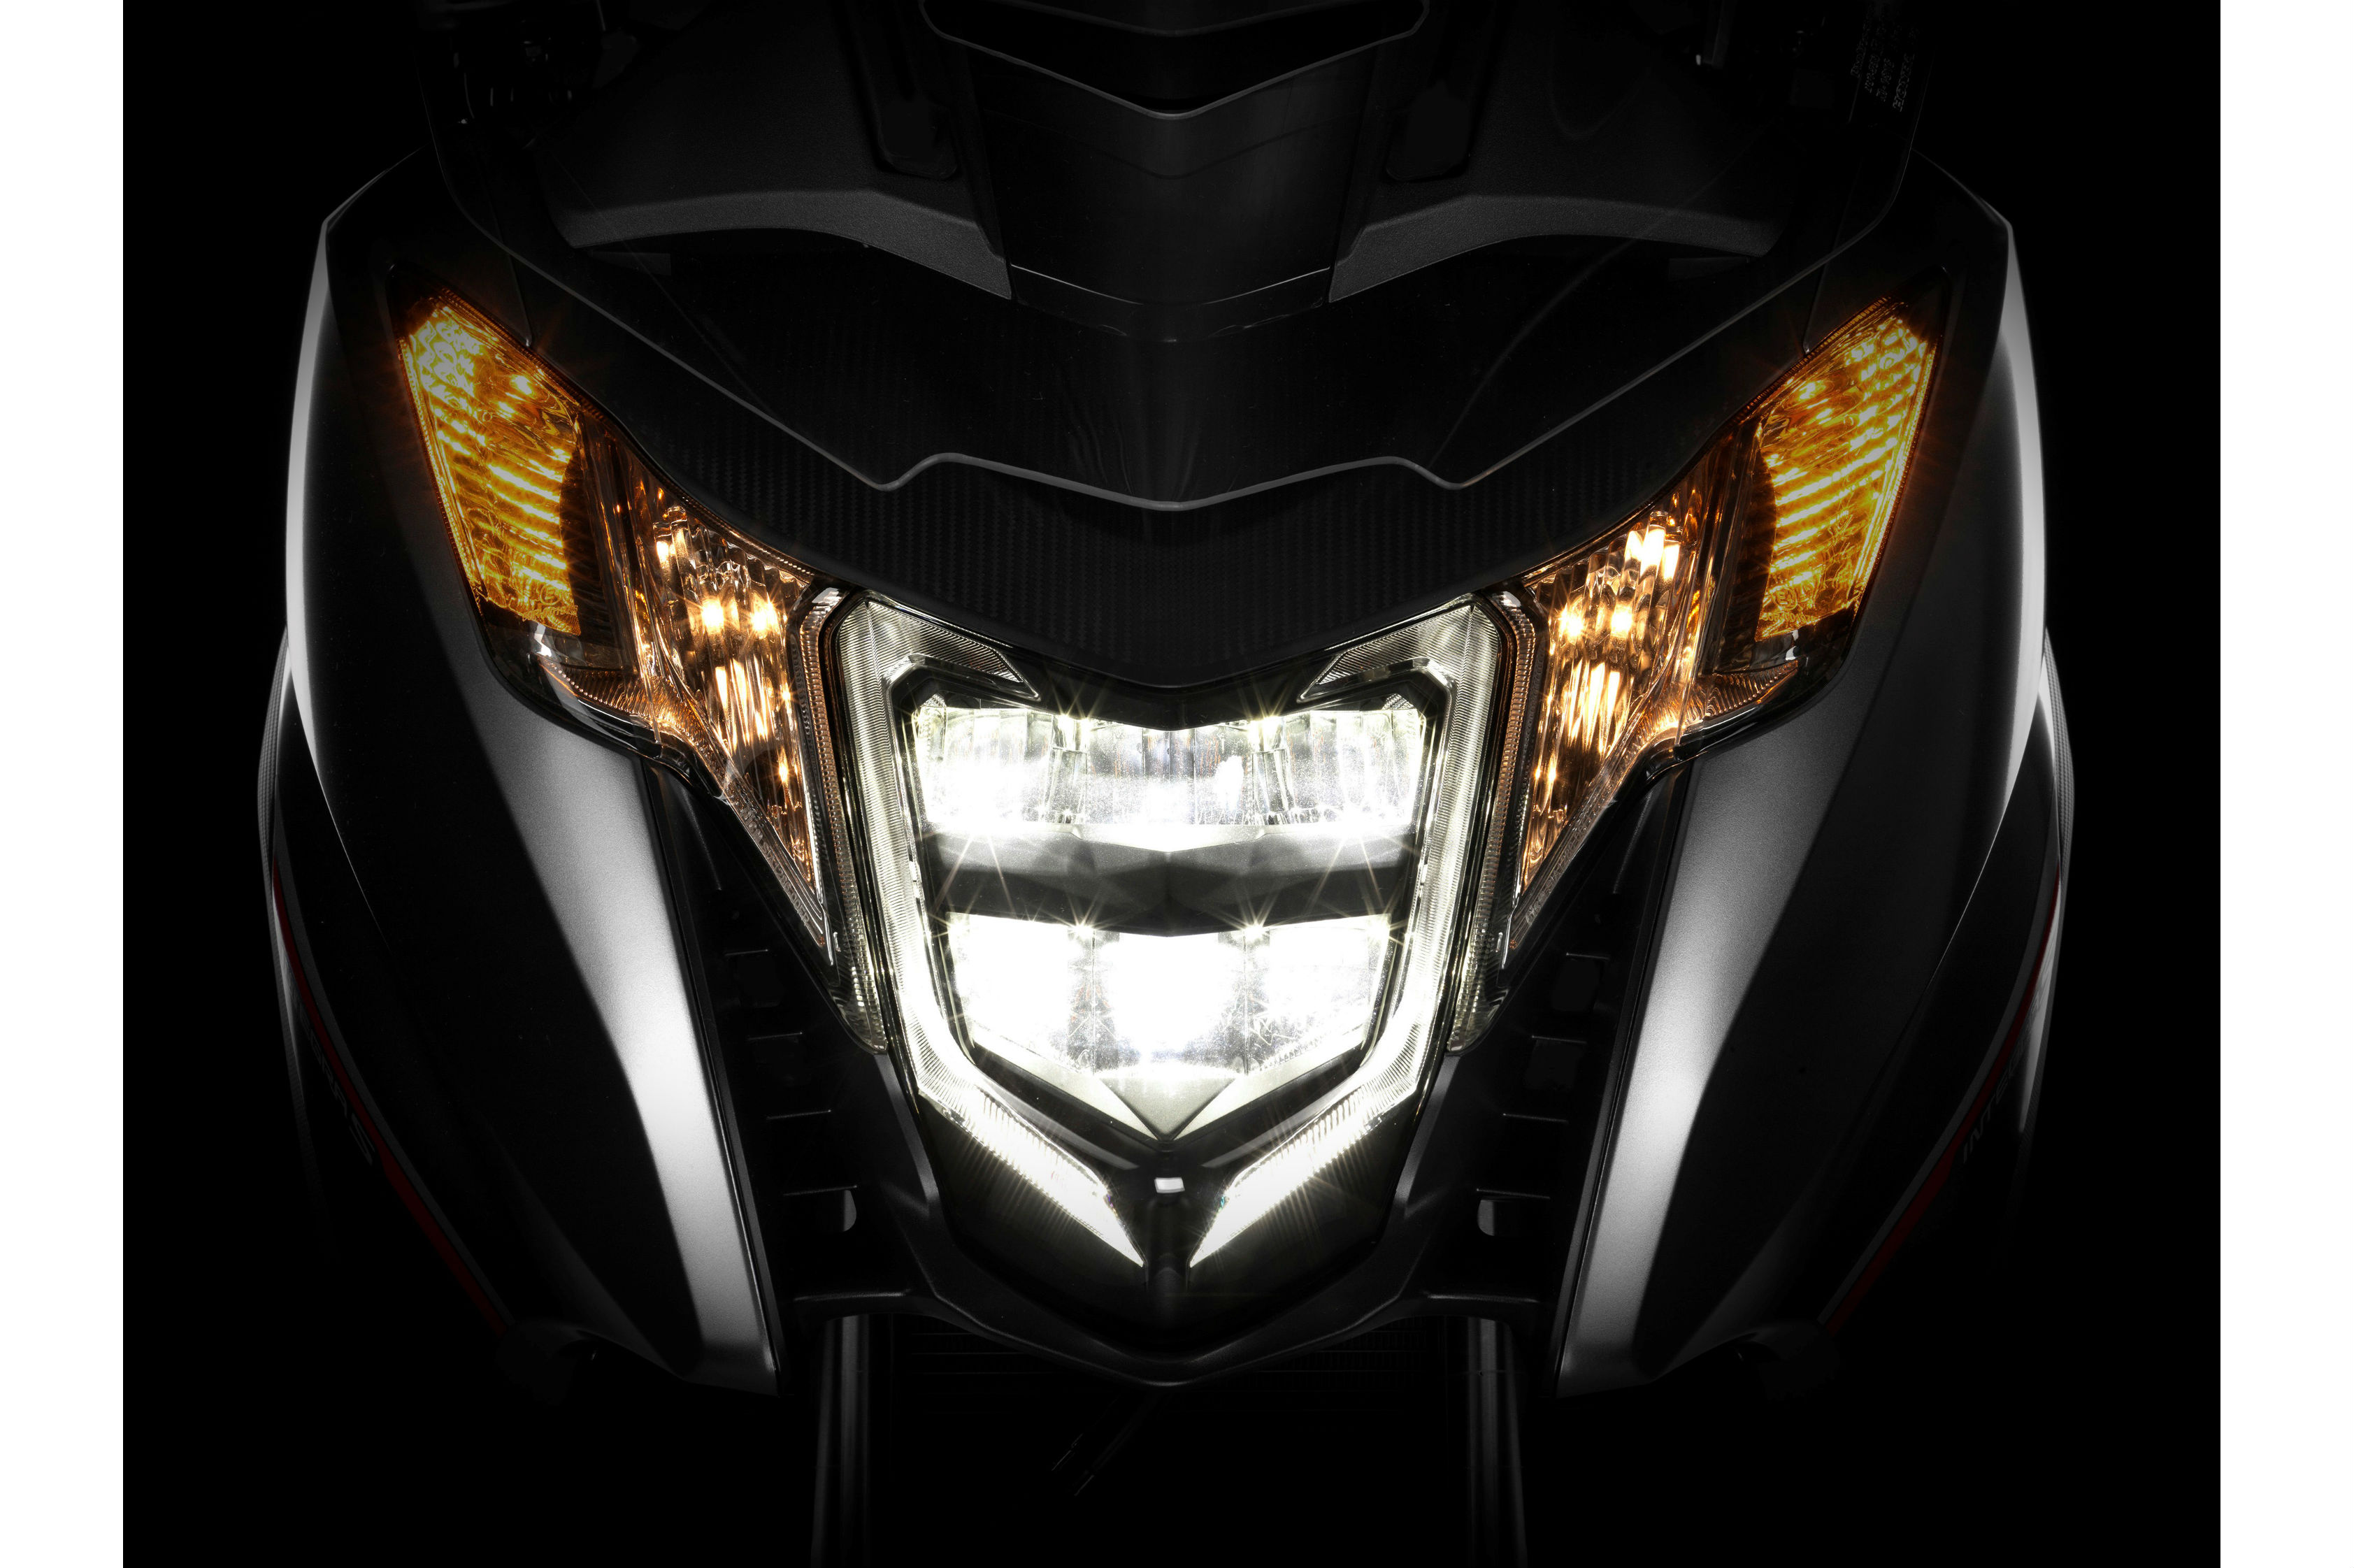 2016 Honda Integra first look